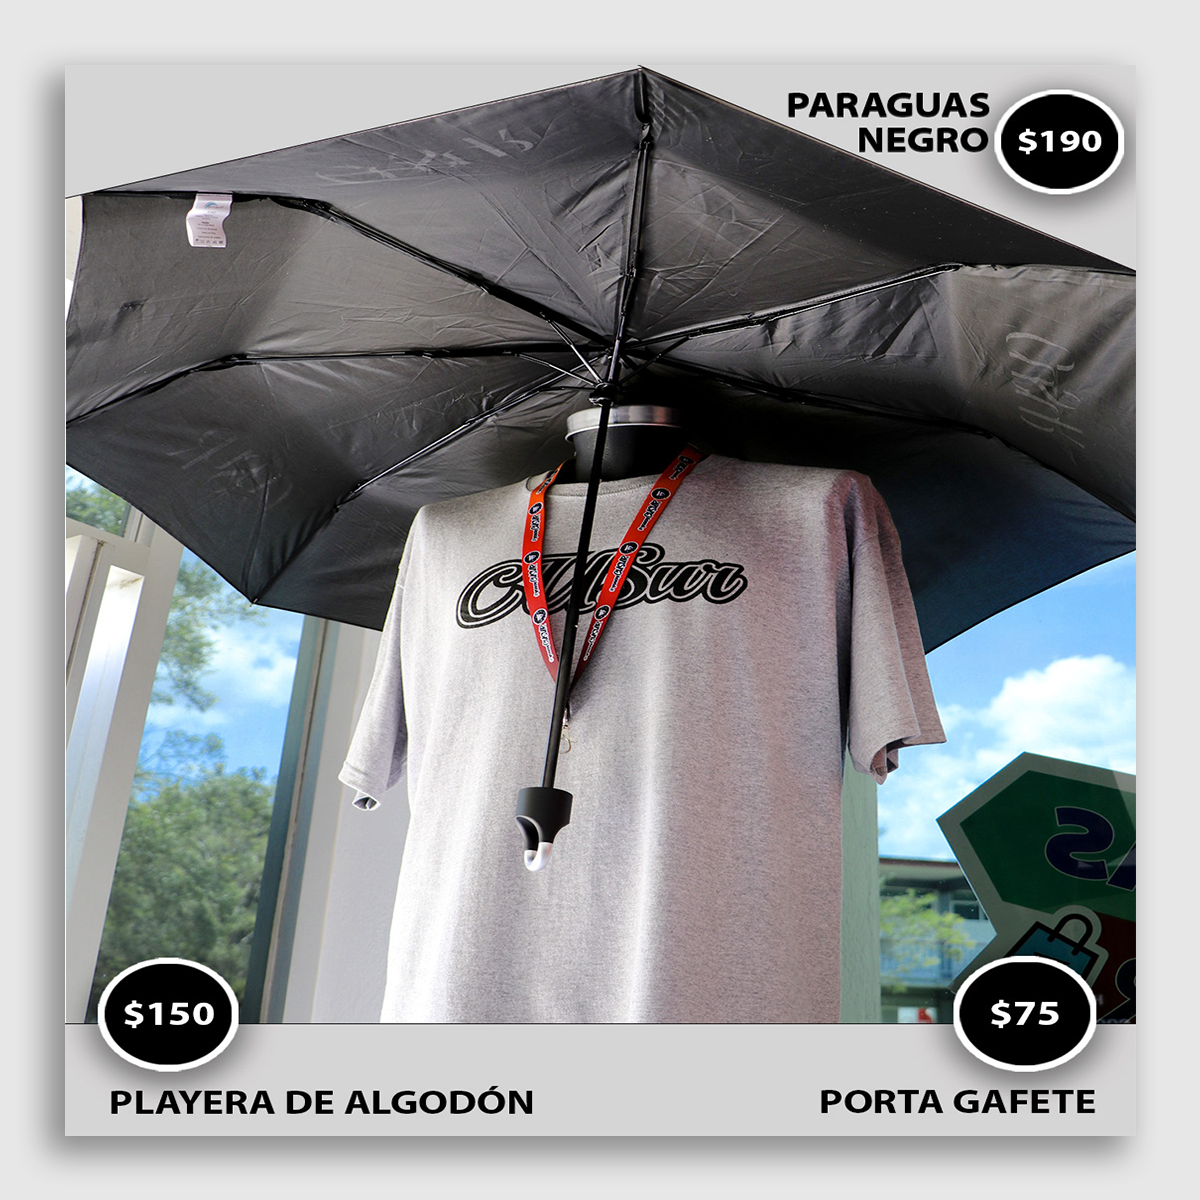 Paraguas tienda extension